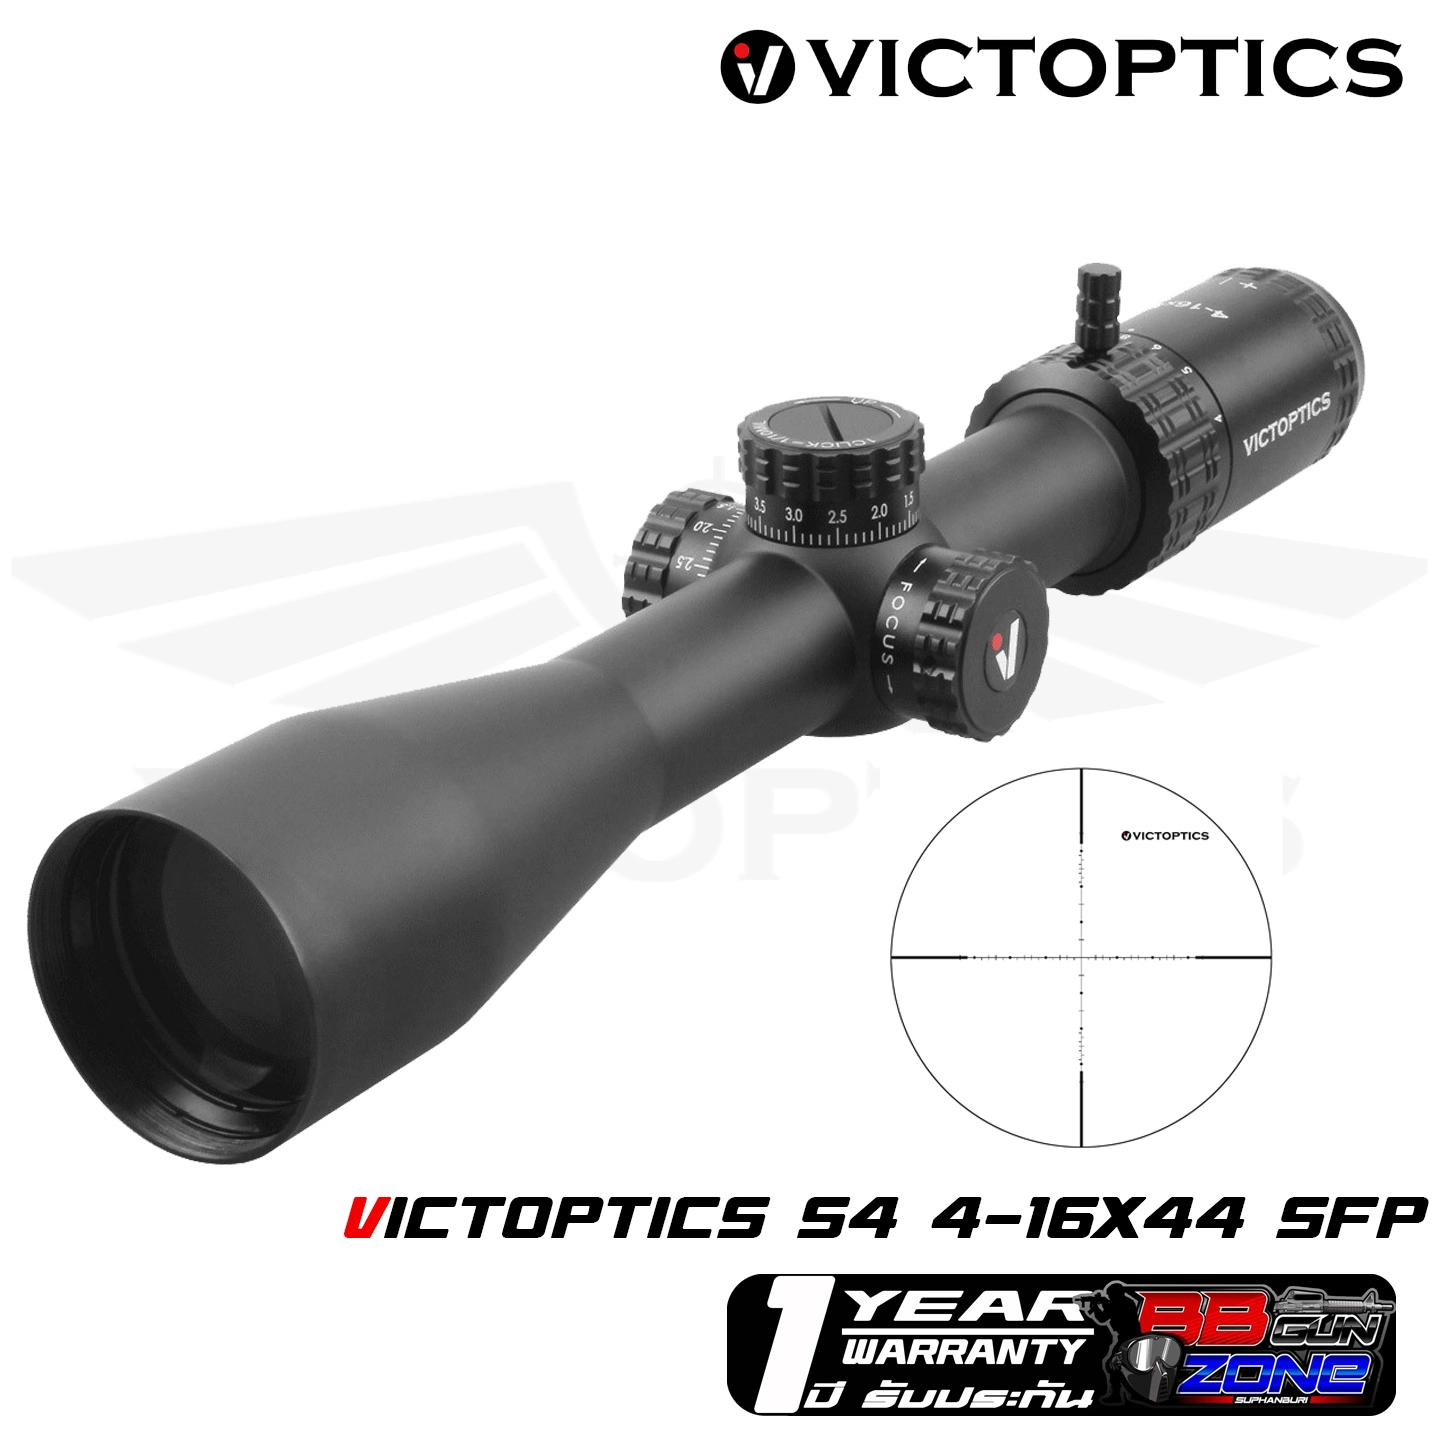 VictOptics S4 4-16x44 SFP